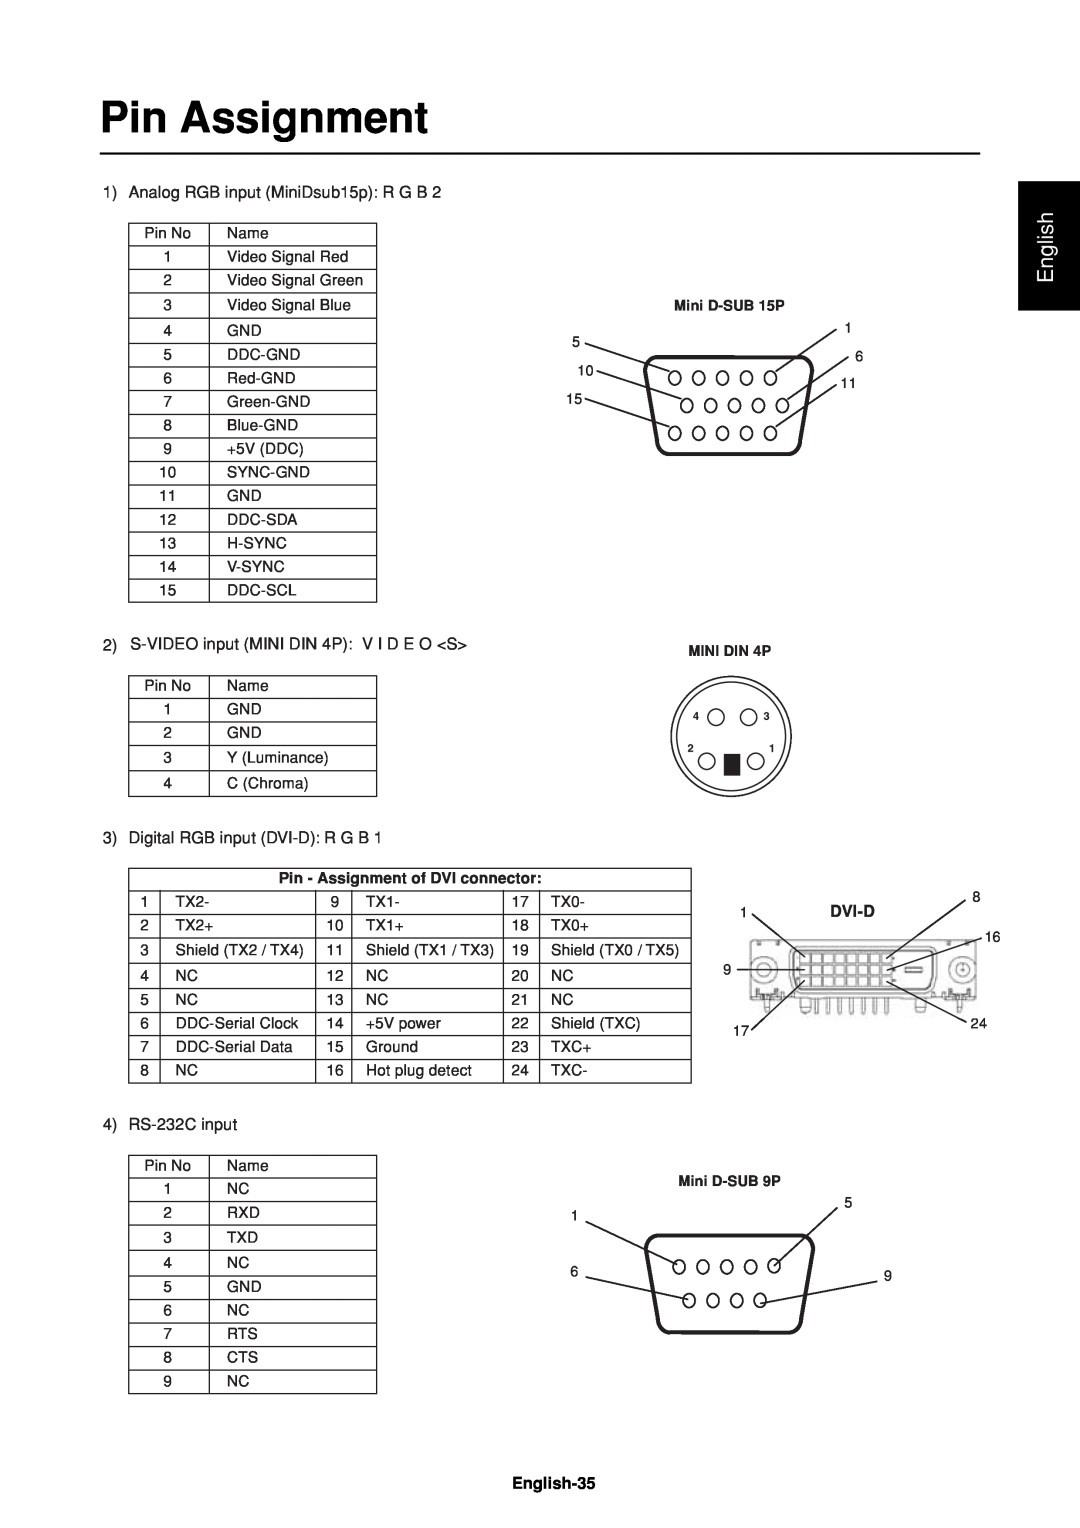 Mitsubishi Electronics LDT37IV (BH544) manual Pin Assignment, English, Dvi-D, Mini D-SUB 15P, MINI DIN 4P, Mini D-SUB 9P 